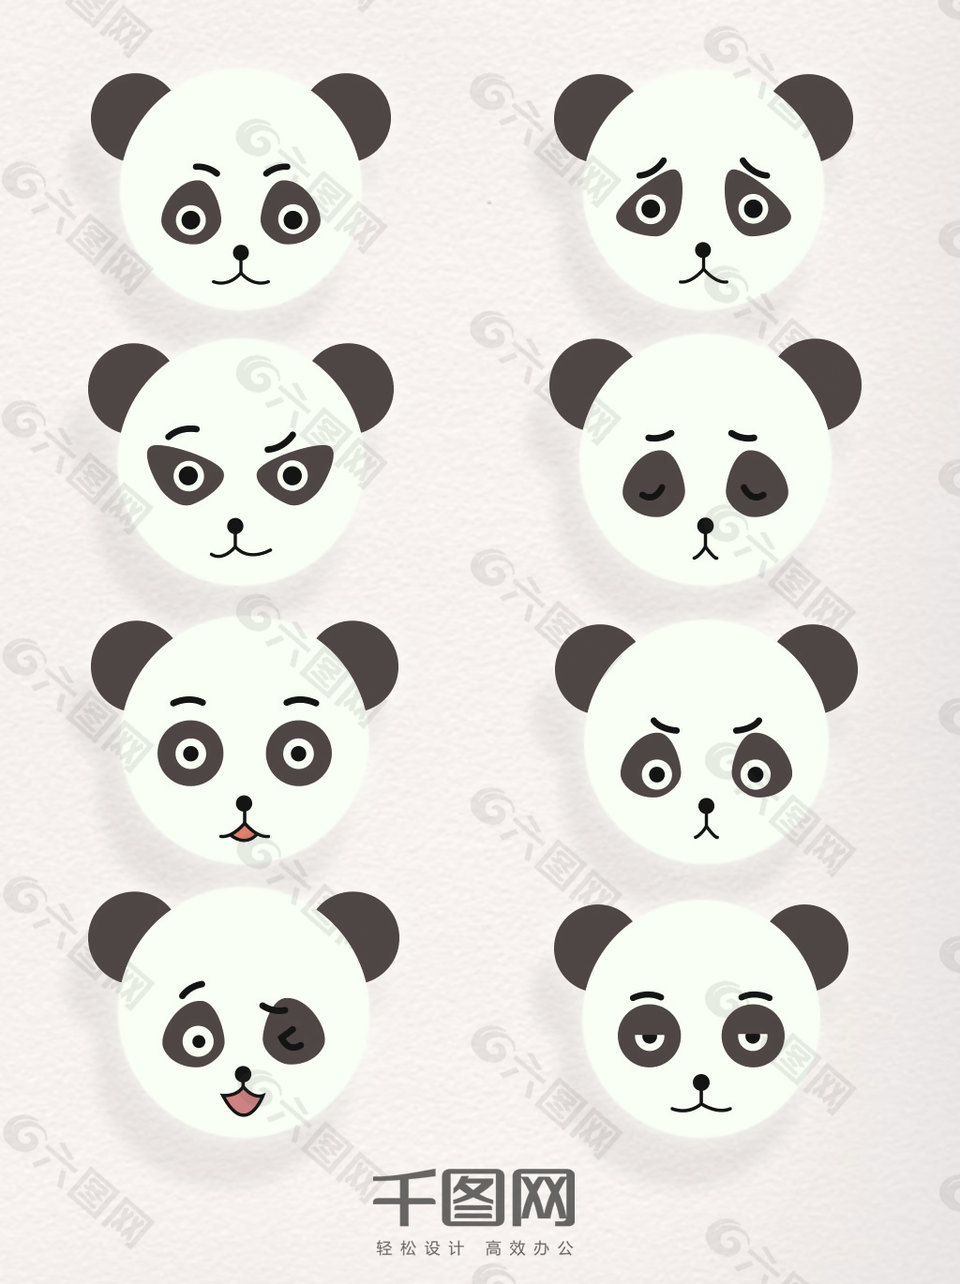 卡通熊猫矢量素材表情包元素装饰图案集合